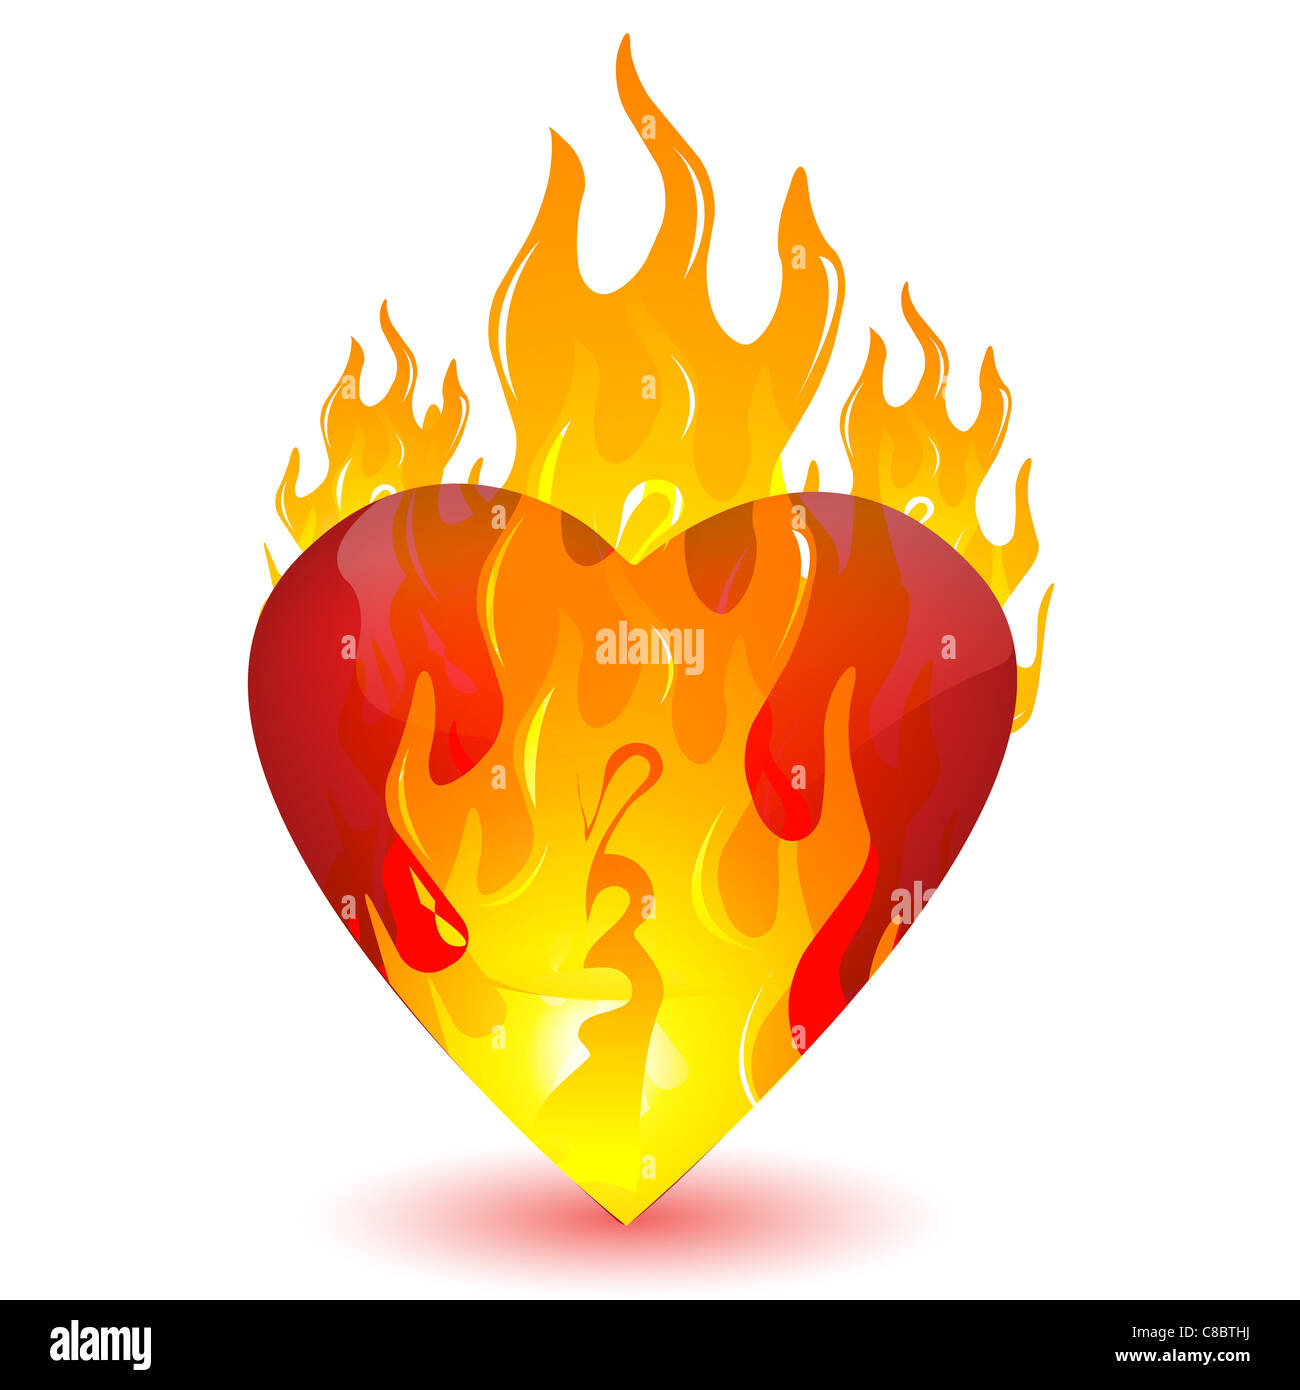 Ilustración de corazón ardiente sobre fondo blanco. Foto de stock